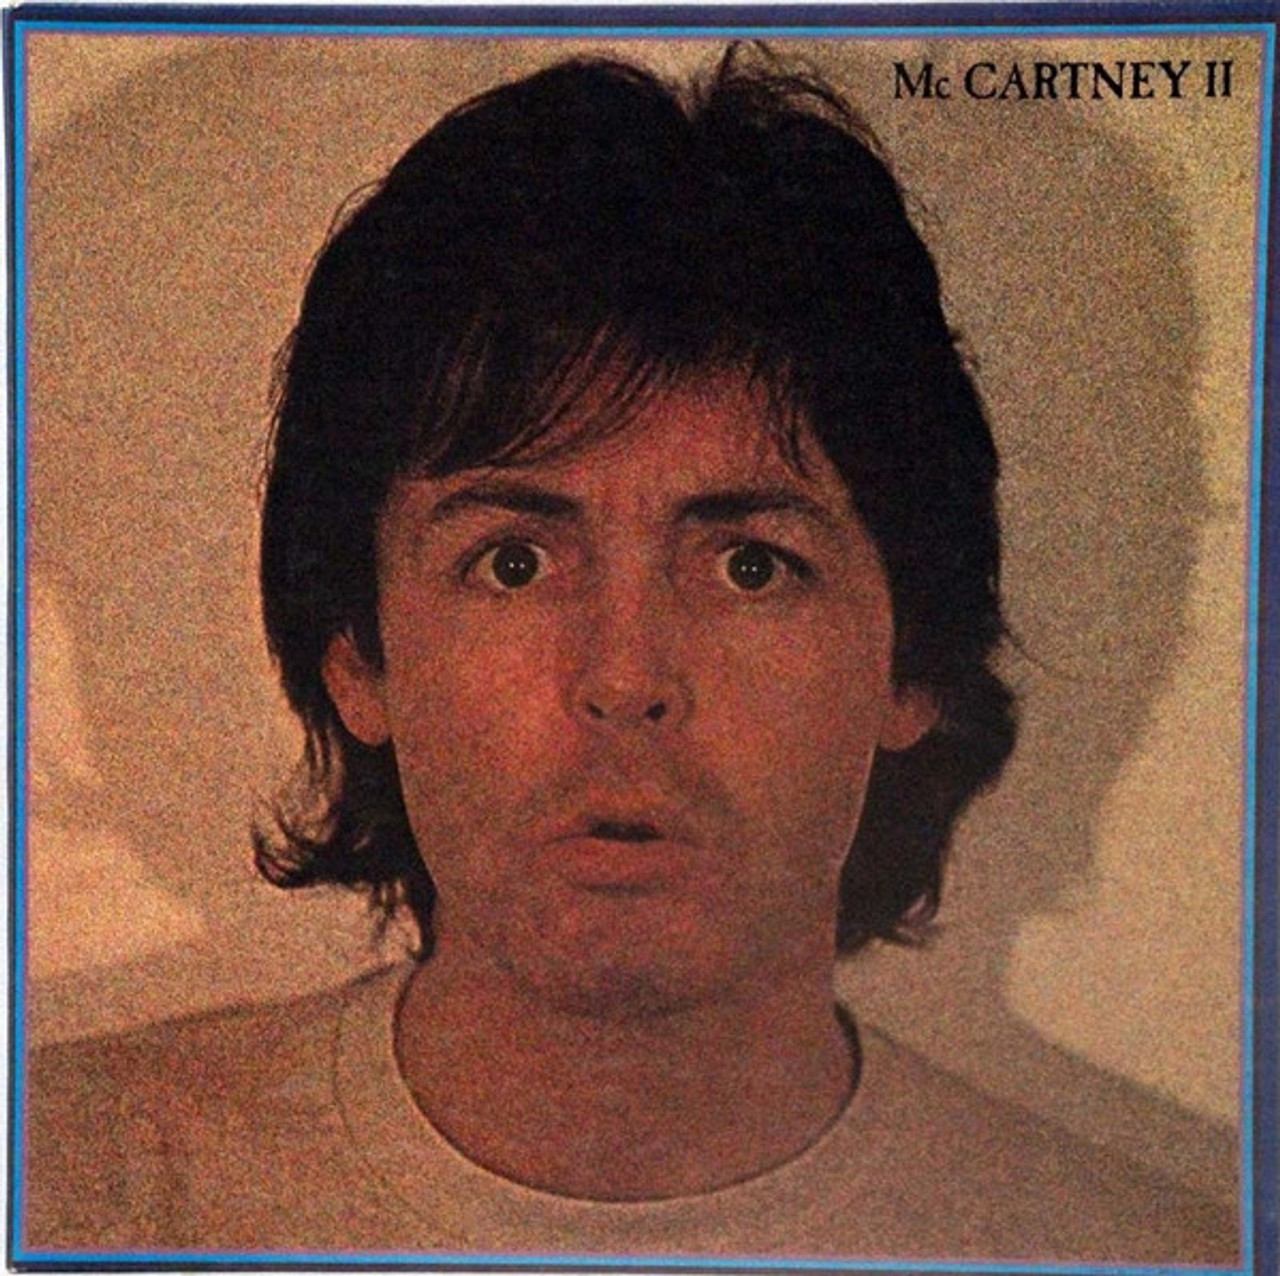 *USED* McCartney II - McCartney, Paul (#428333631522)